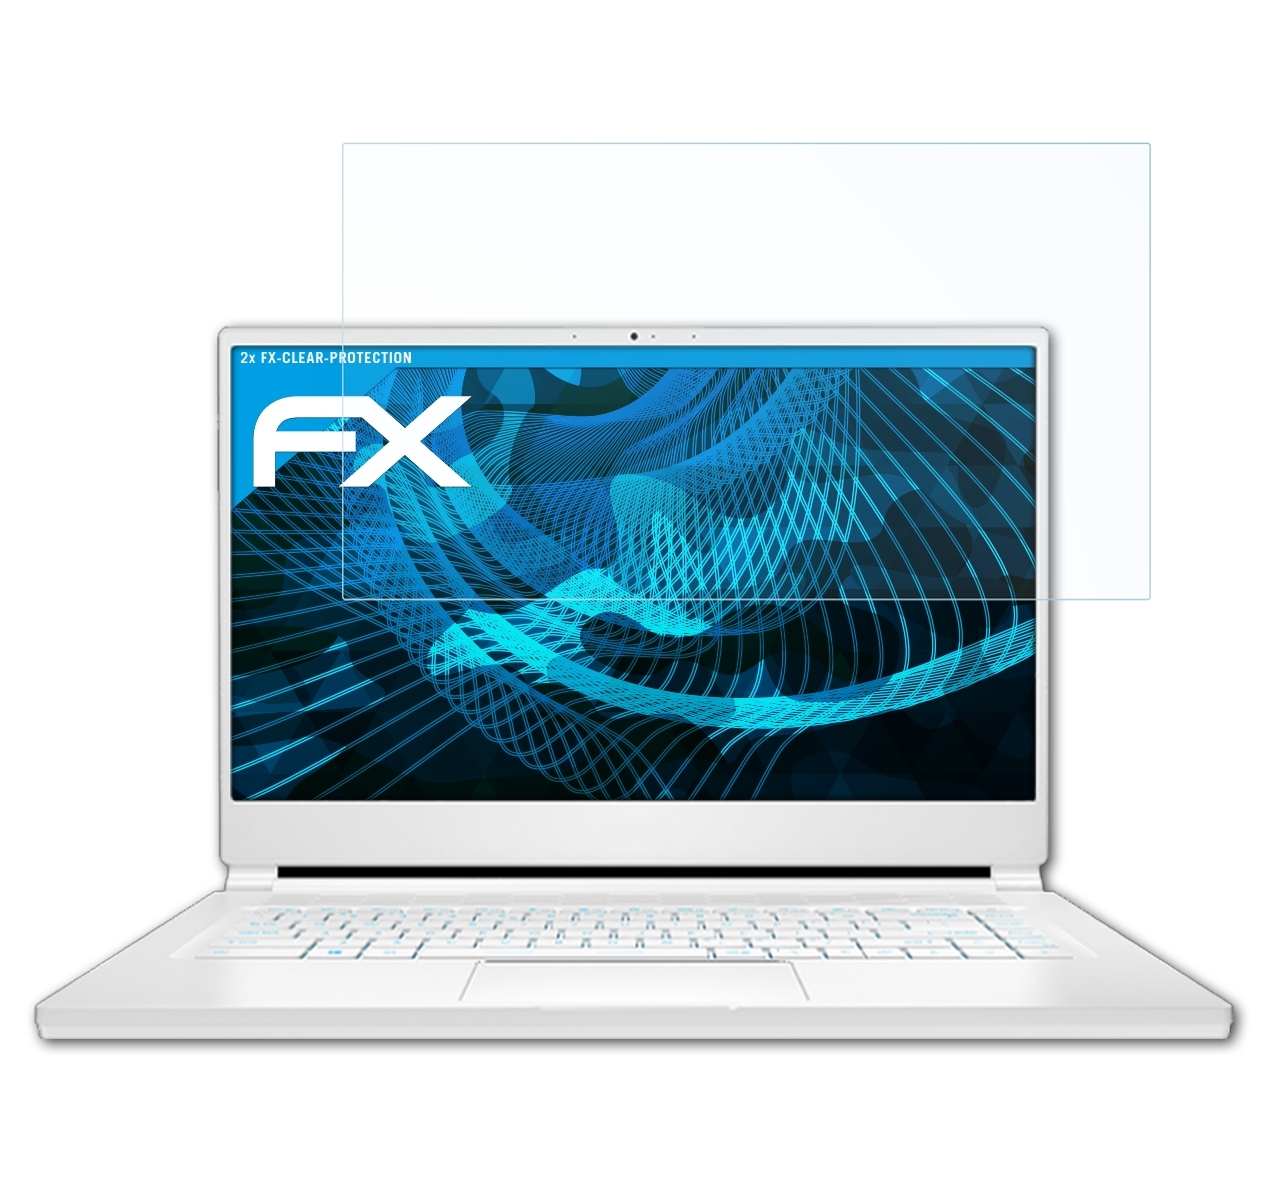 ATFOLIX 2x MSI Displayschutz(für Stealth 15M) FX-Clear